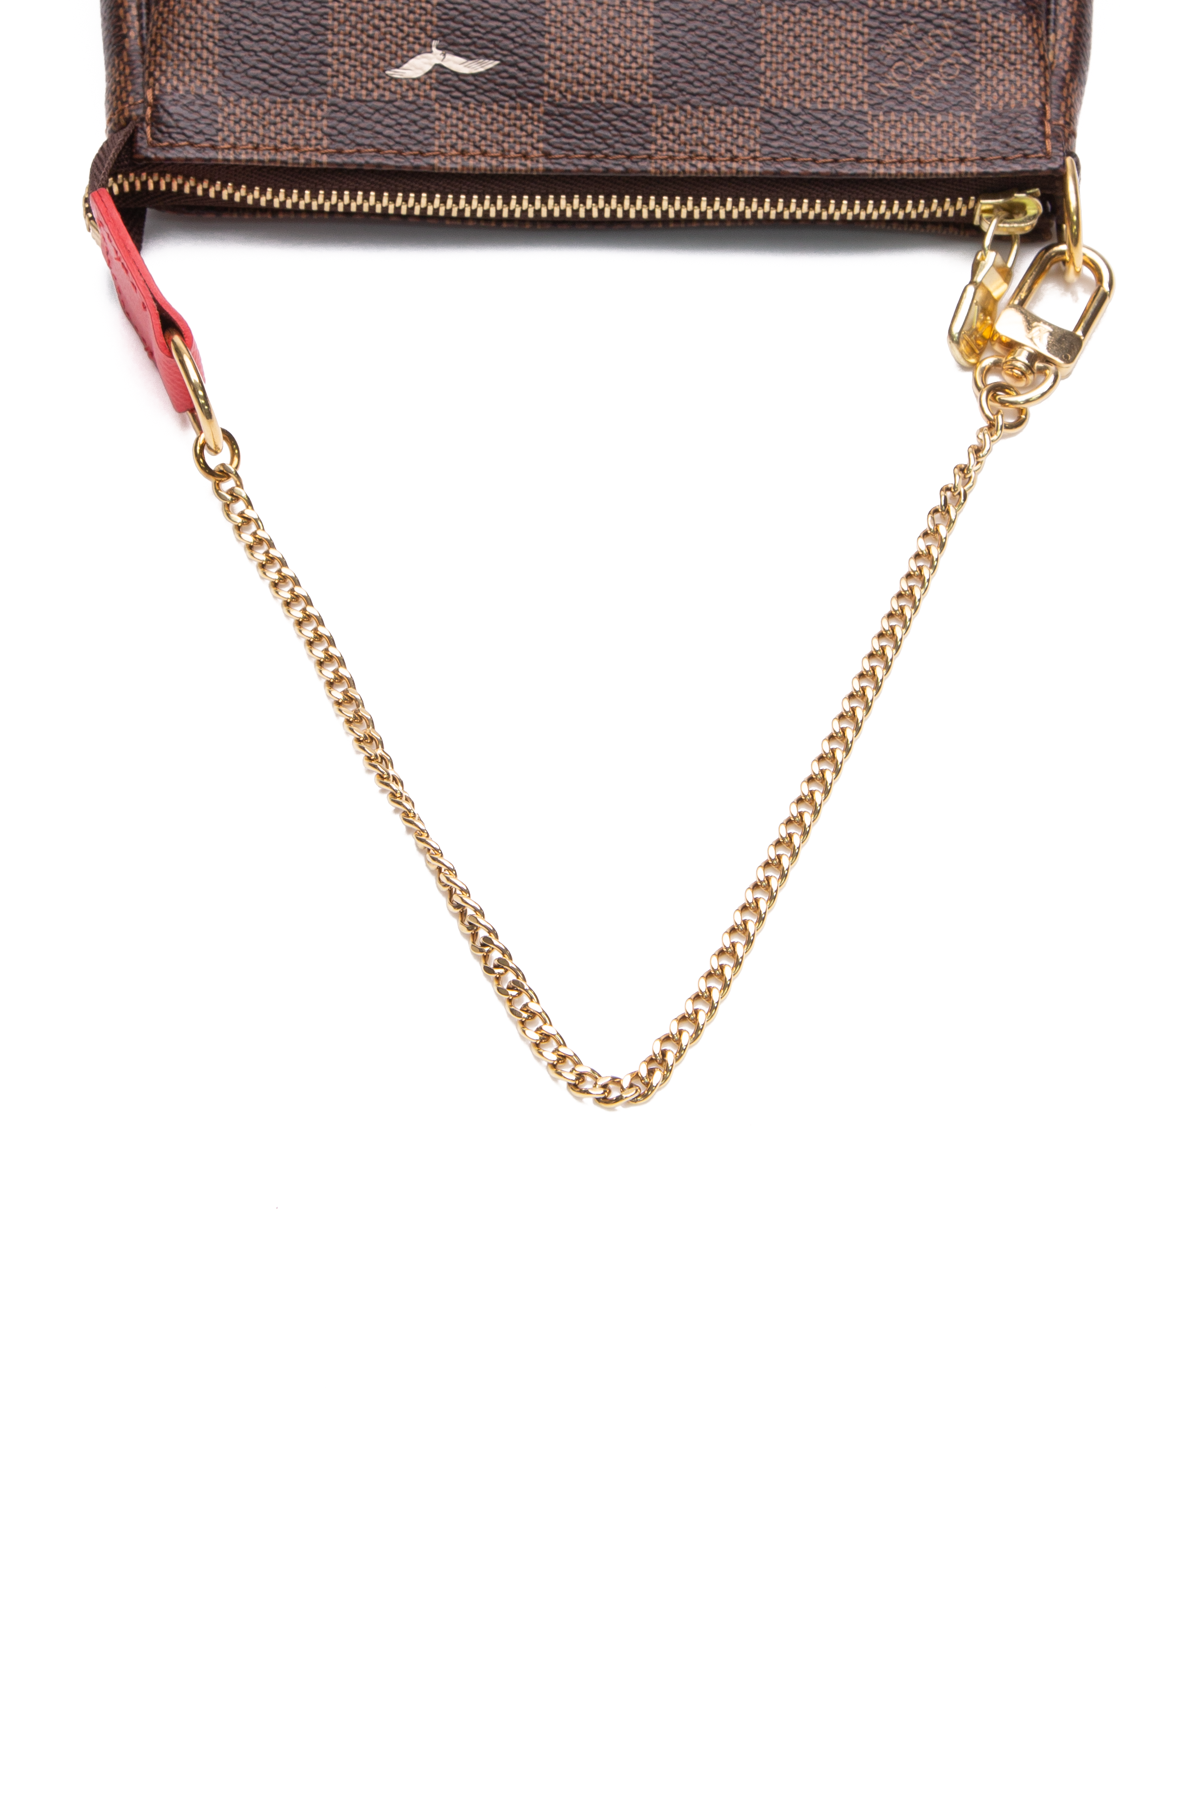 Louis Vuitton, Bags, Louis Vuitton Monogram Mini Pochette Accessoires Bag  Gold Chain